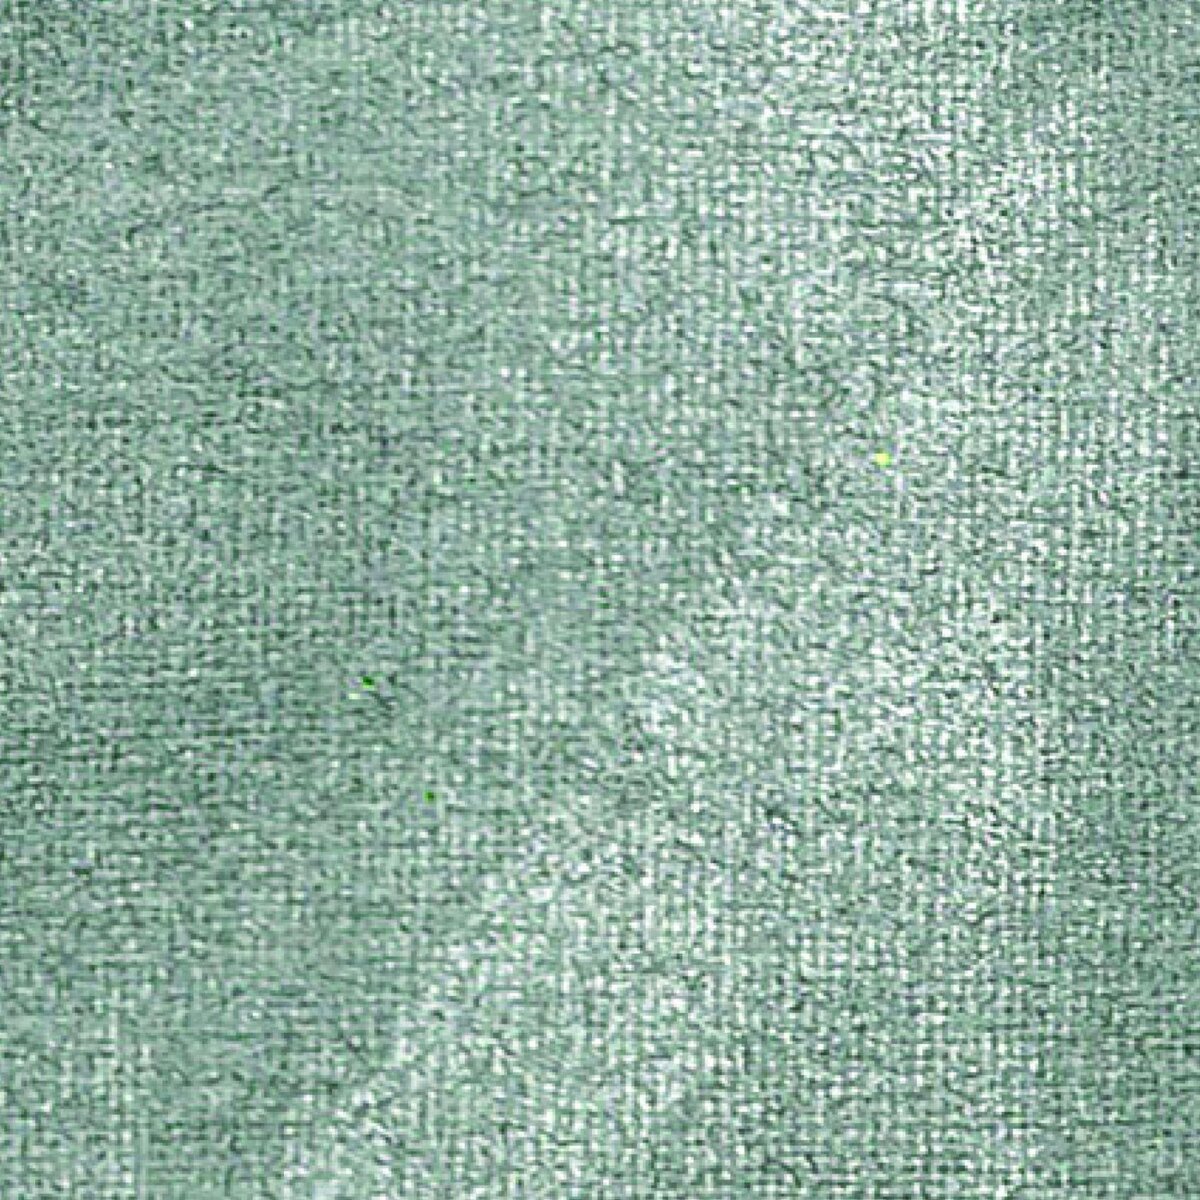 Pebeo Peinture textile Setacolor opaque effet métallique - Argenté - 45 ml